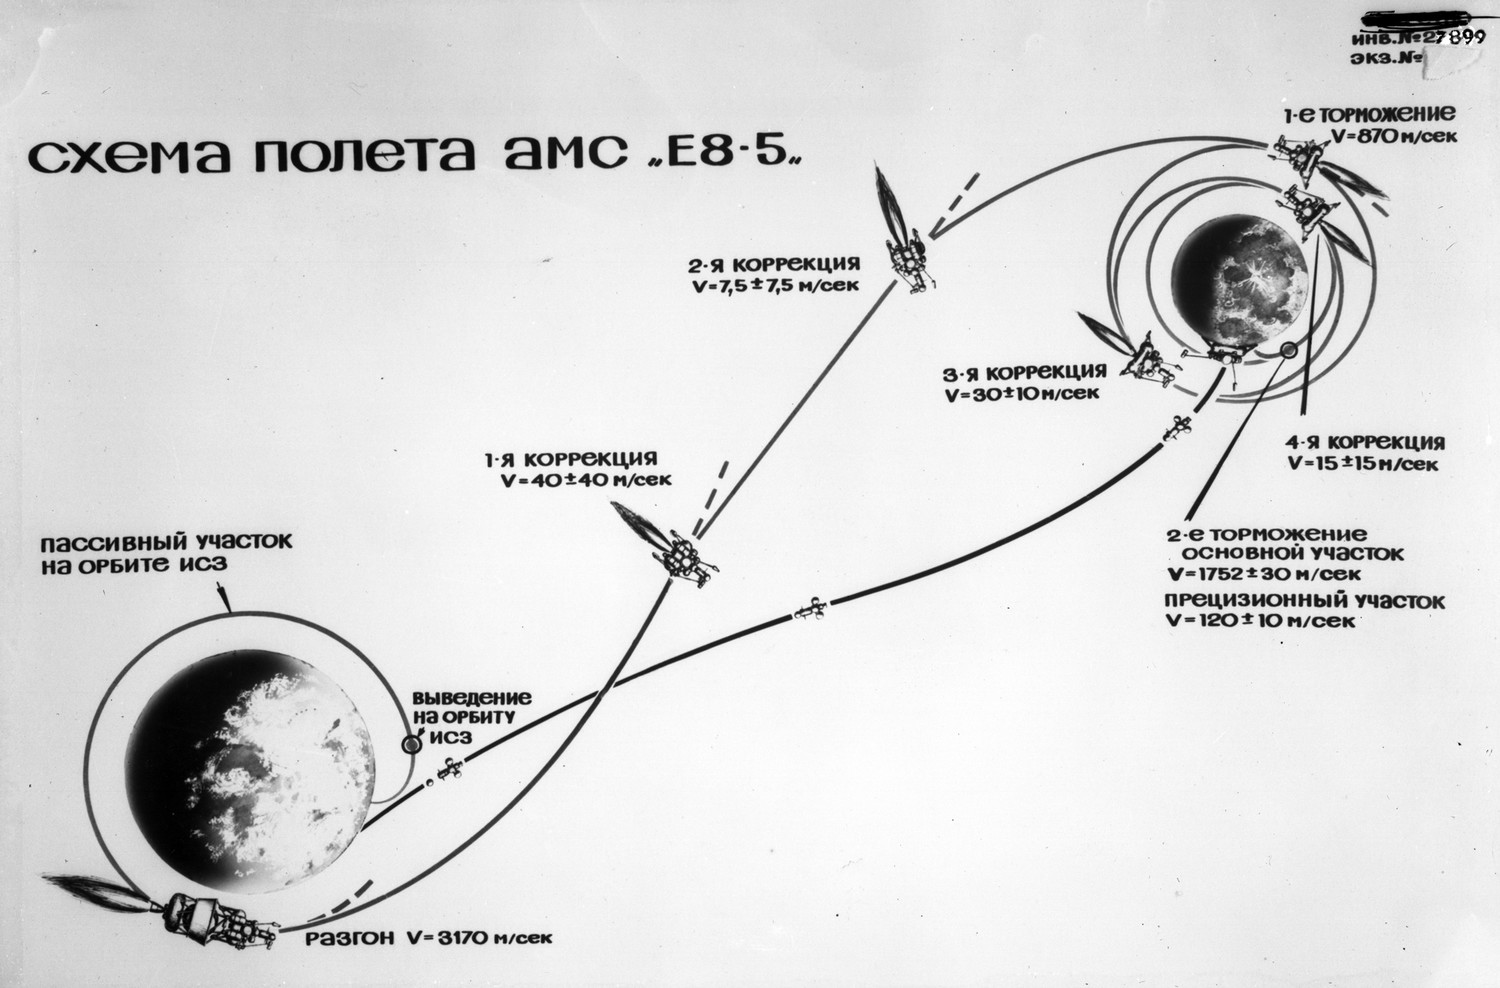 Схема полета автоматической лунной станции Е8-5
